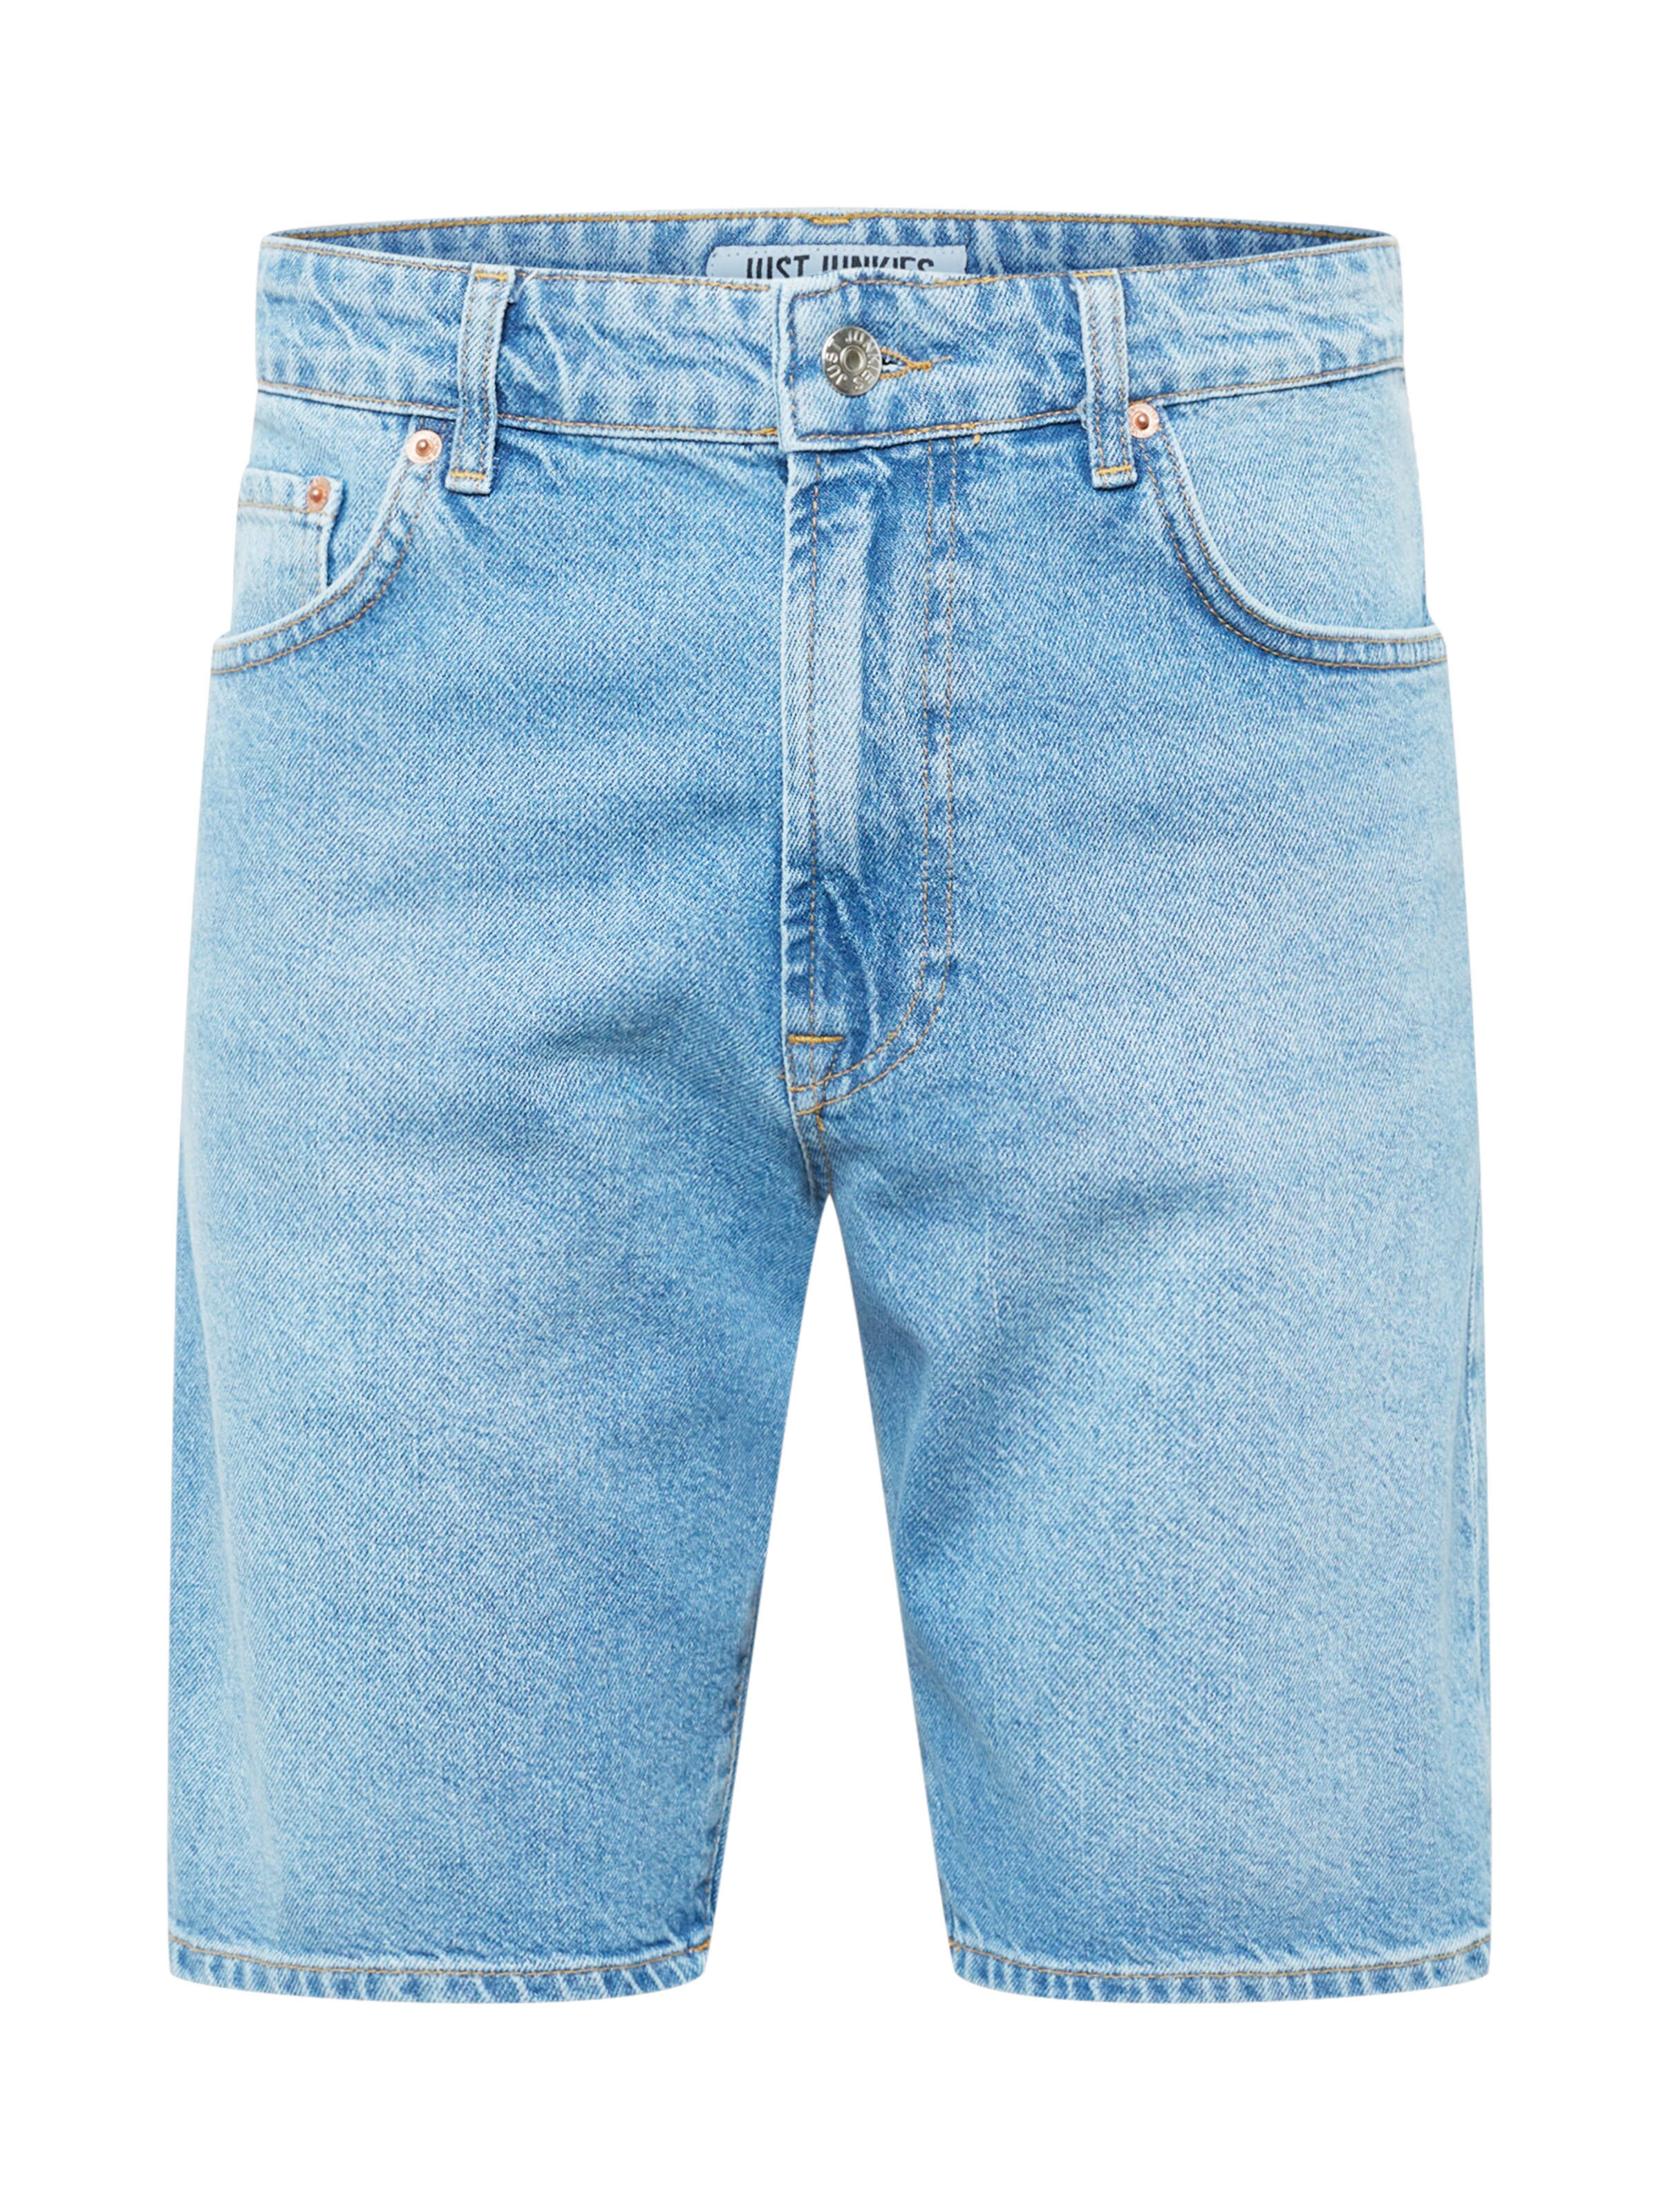 Männer Hosen JUST JUNKIES Shorts in Blau - OH89783